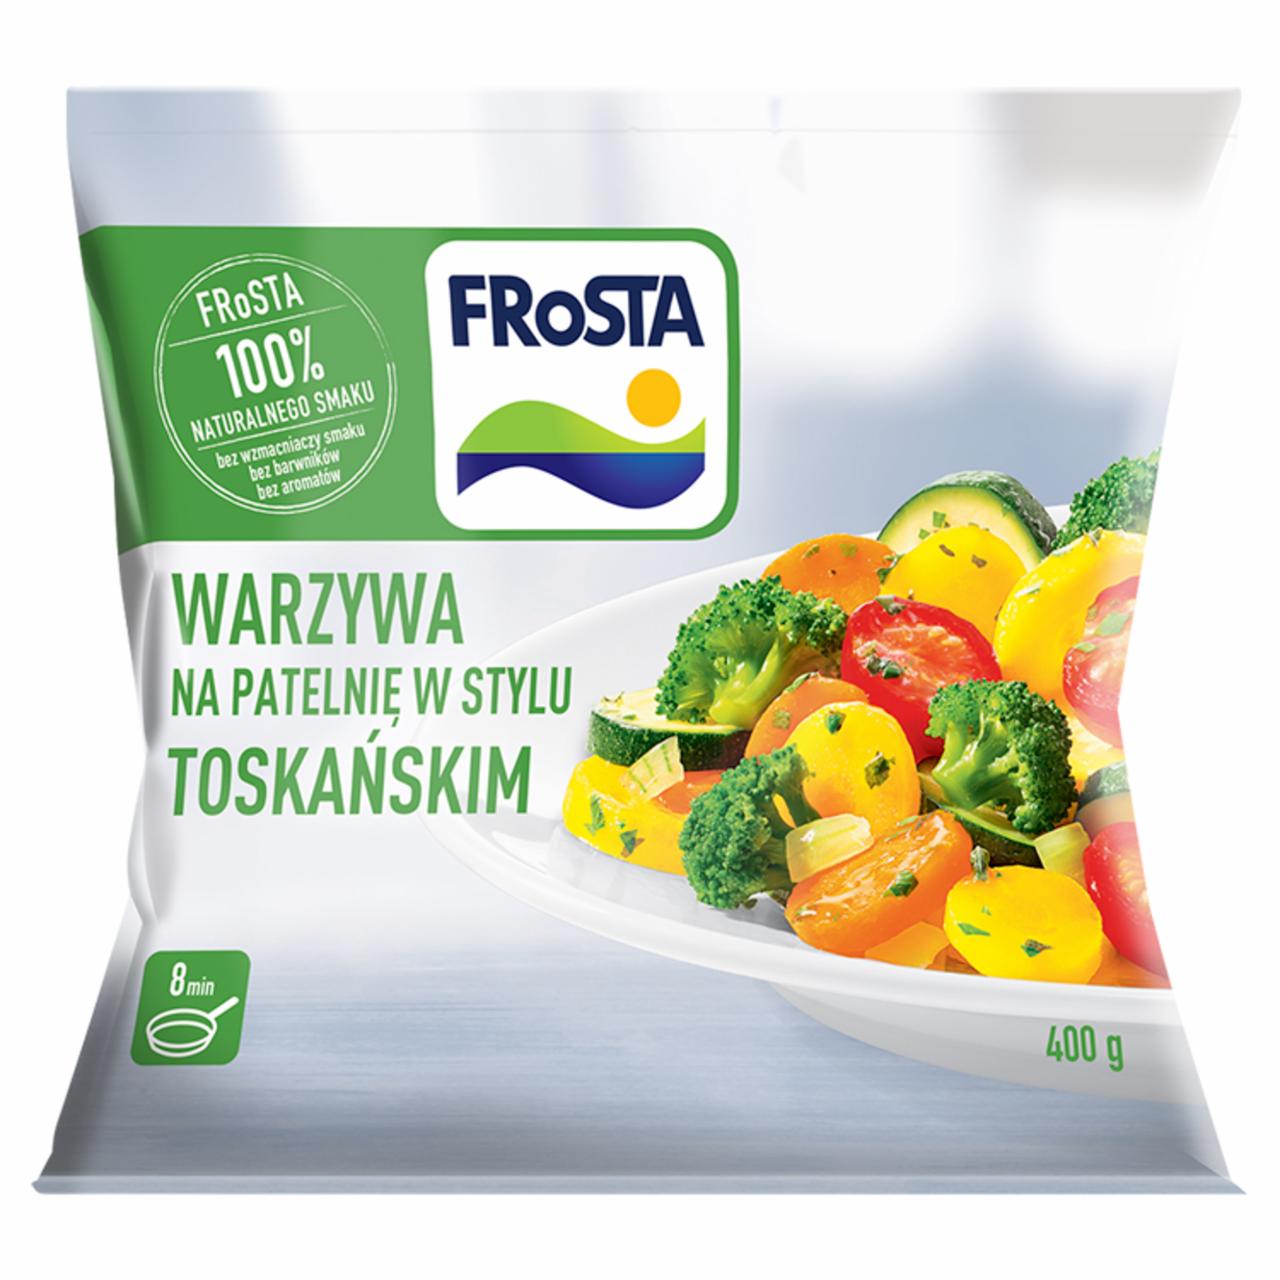 Zdjęcia - FRoSTA Warzywa na patelnię w stylu toskańskim 400 g